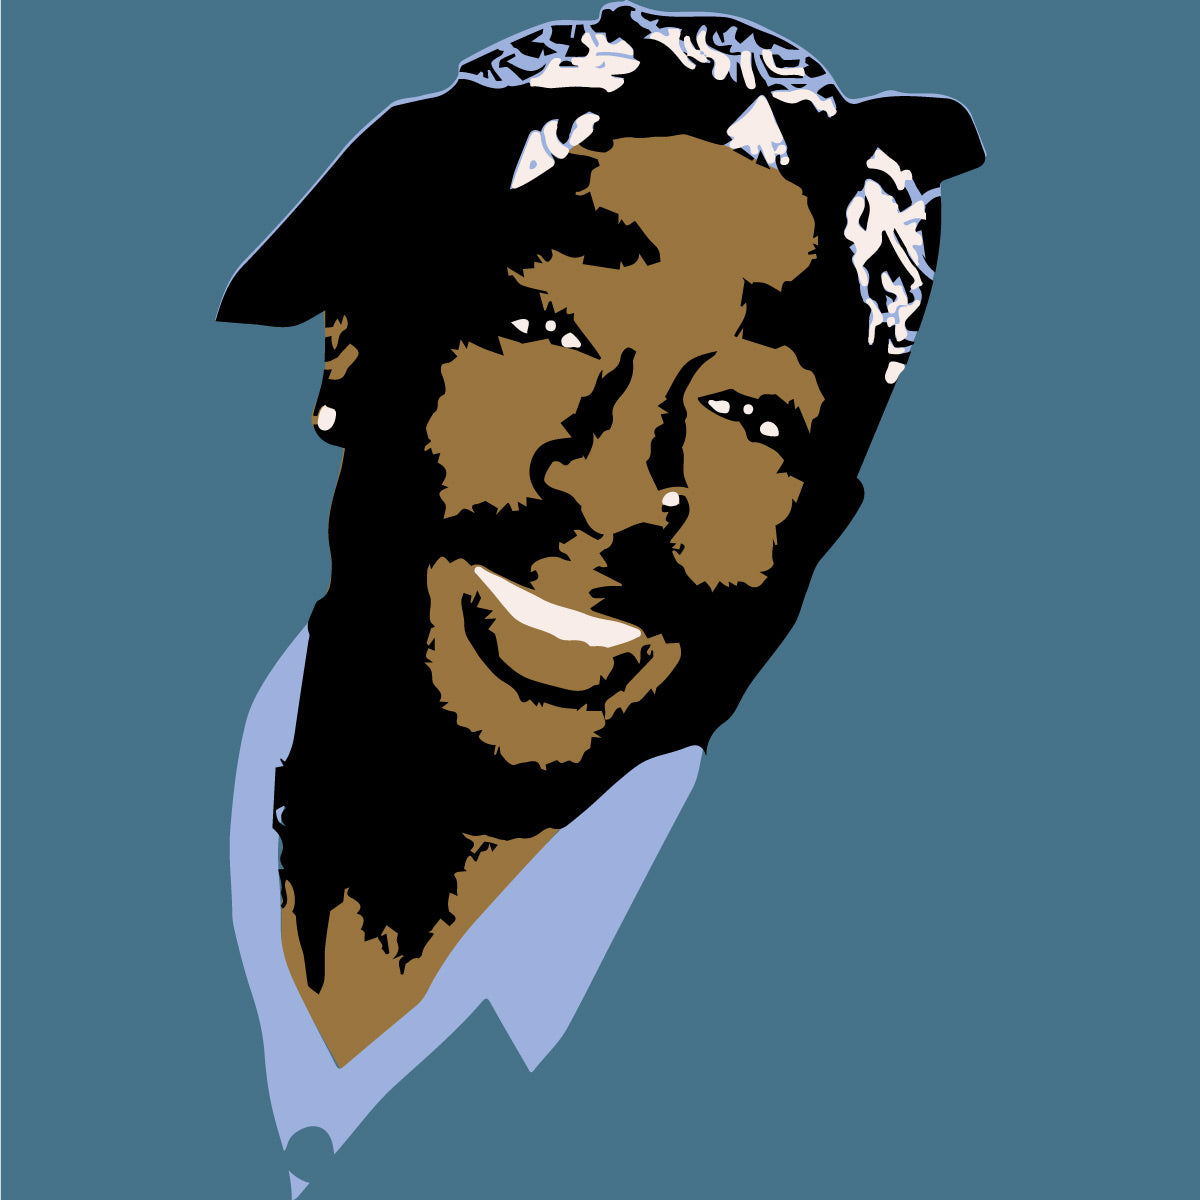 Tupac "With Bandana" Layered Stencil Set